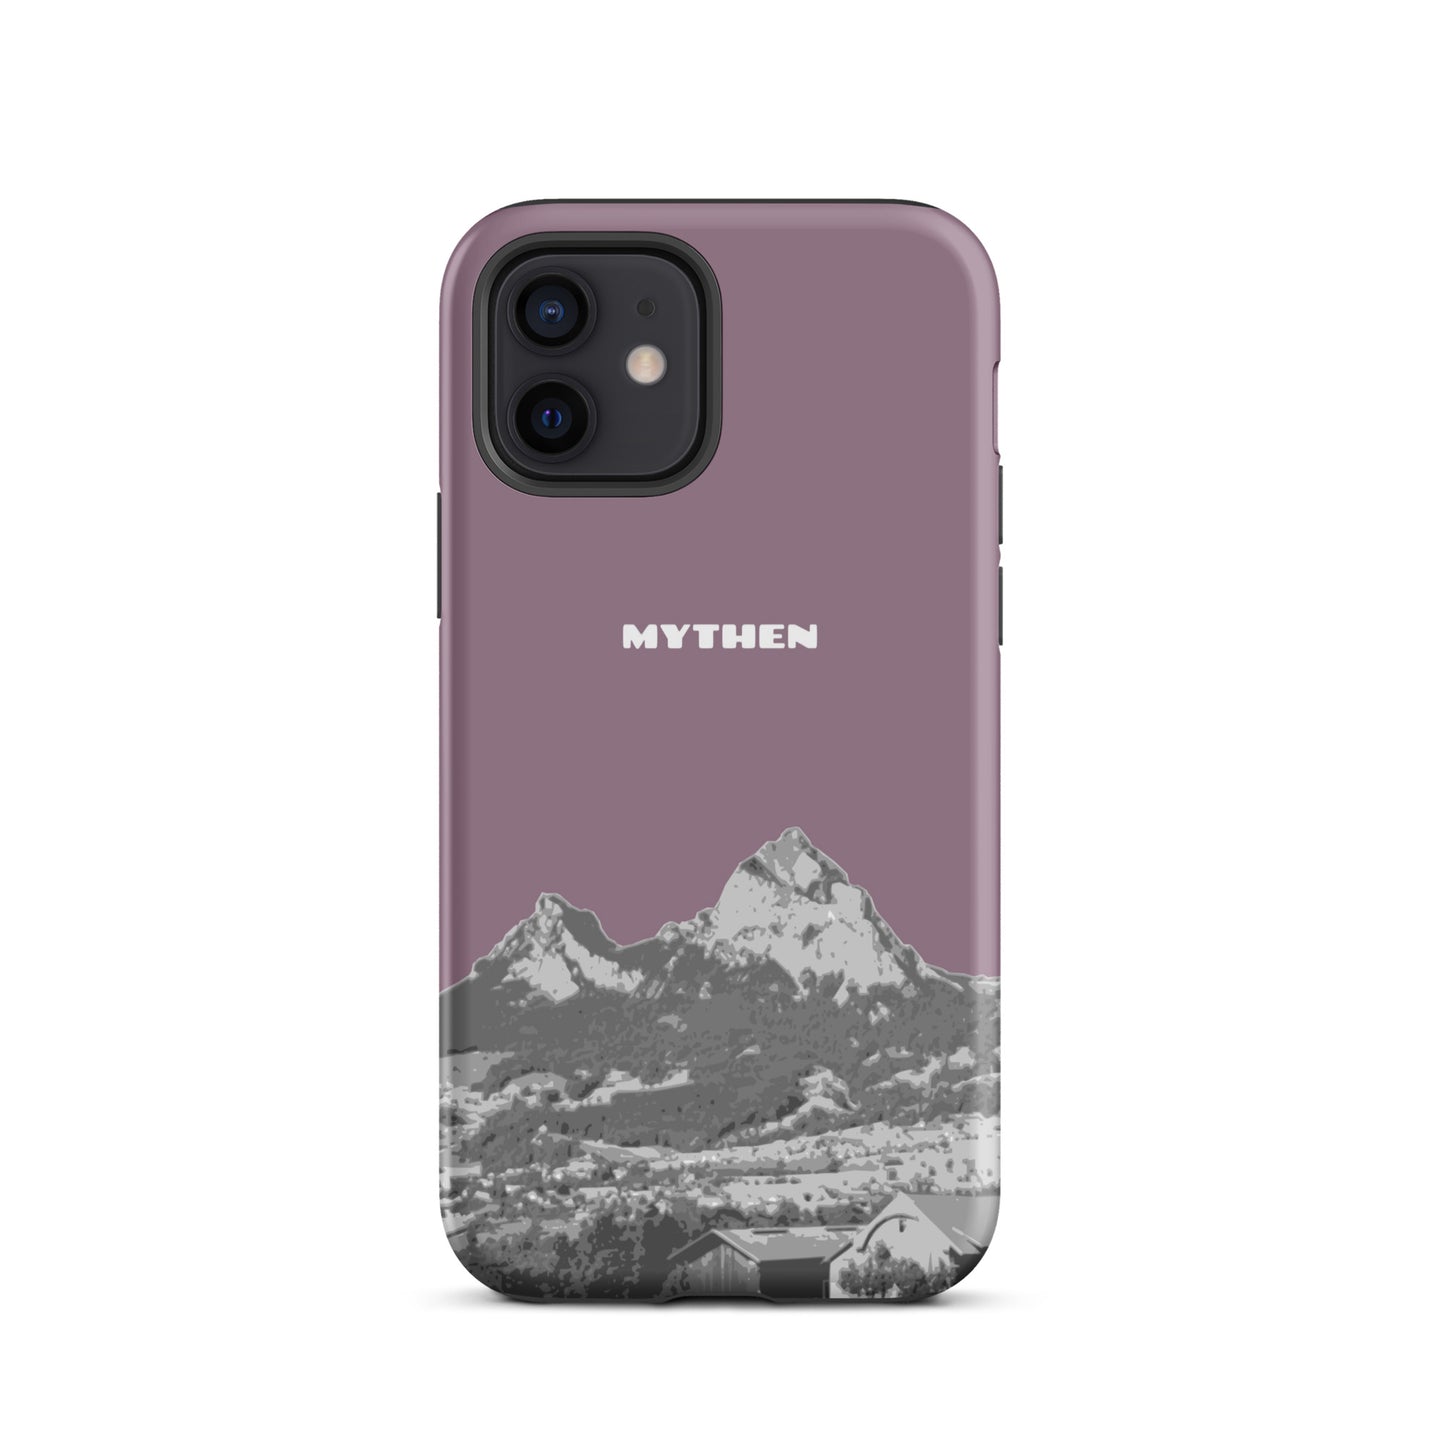 Hülle für das iPhone 12 von Apple in der Farbe Pastellviolett, die den Grossen Mythen und den Kleinen Mythen bei Schwyz zeigt. 